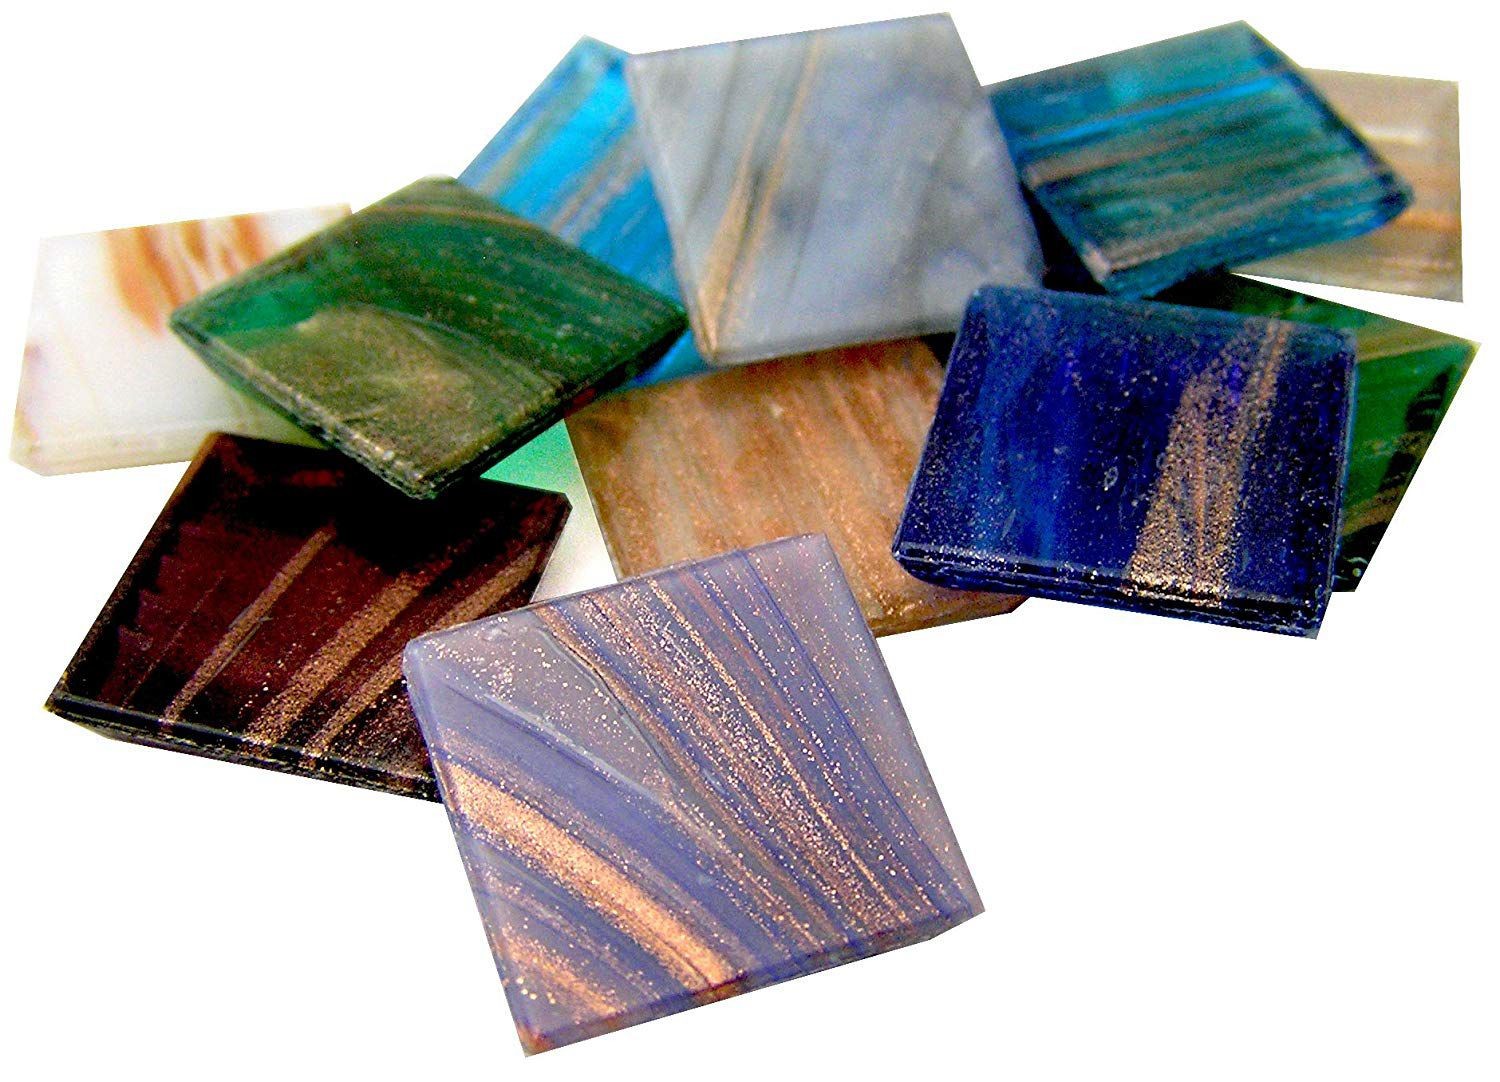 購入さまざまな色グリッターエポキシ床,さまざまな色グリッターエポキシ床価格,さまざまな色グリッターエポキシ床ブランド,さまざまな色グリッターエポキシ床メーカー,さまざまな色グリッターエポキシ床市場,さまざまな色グリッターエポキシ床会社